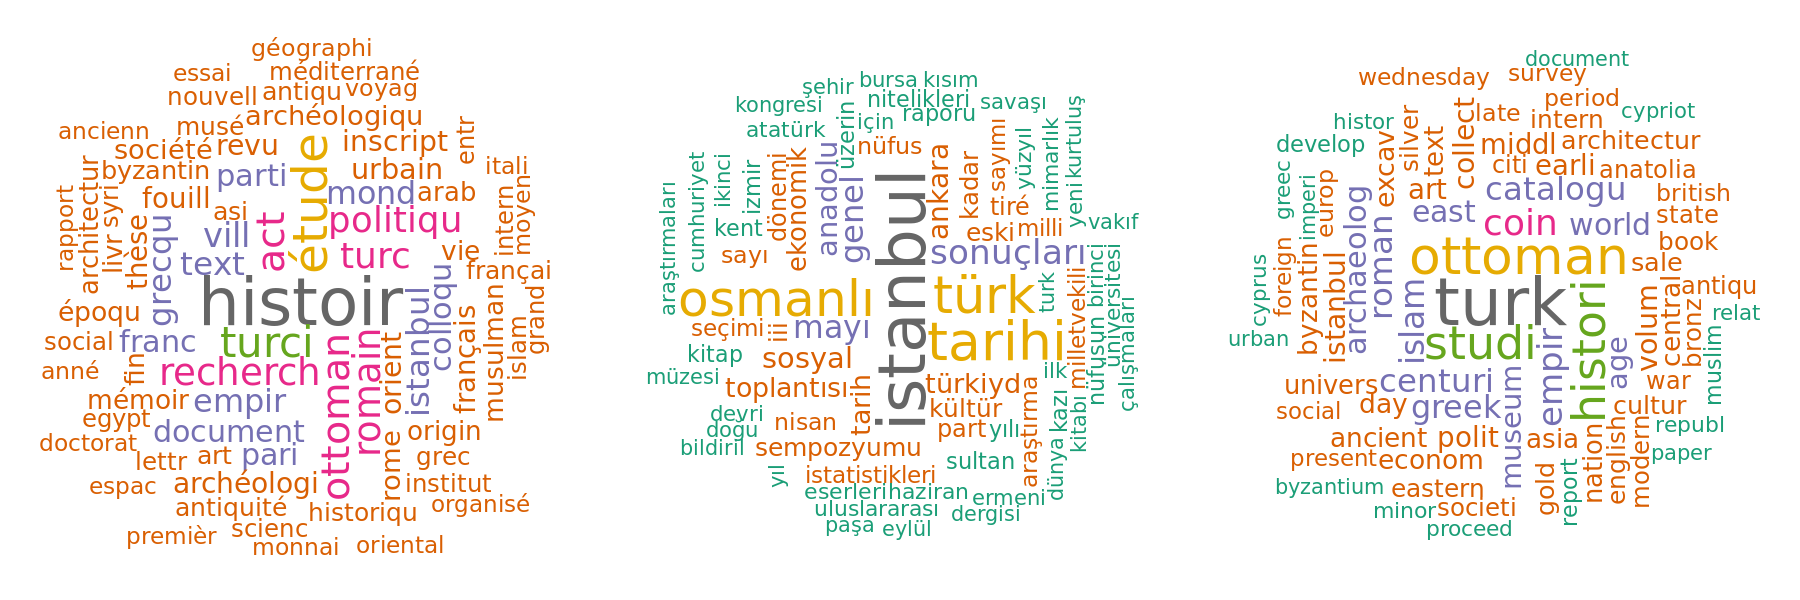 4. Nuages de mots d'après les titres en français, turc et anglais. CC BY 4.0 Strupler